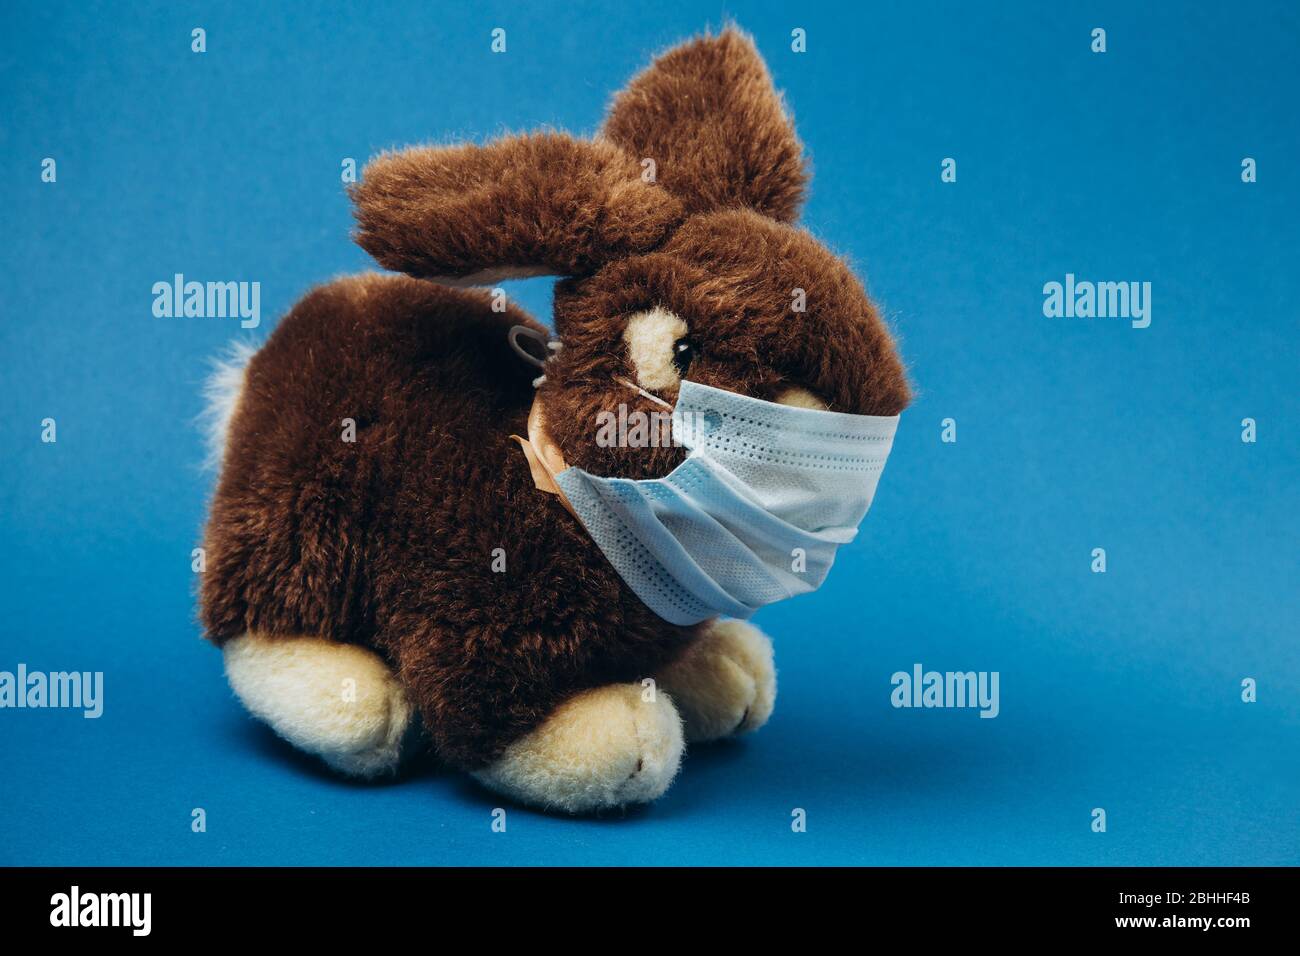 Il coniglio giocattolo si trova in una maschera medica su sfondo blu. Concetto di protezione dalle malattie respiratorie, virus. Interrompere il coronavirus. Foto Stock